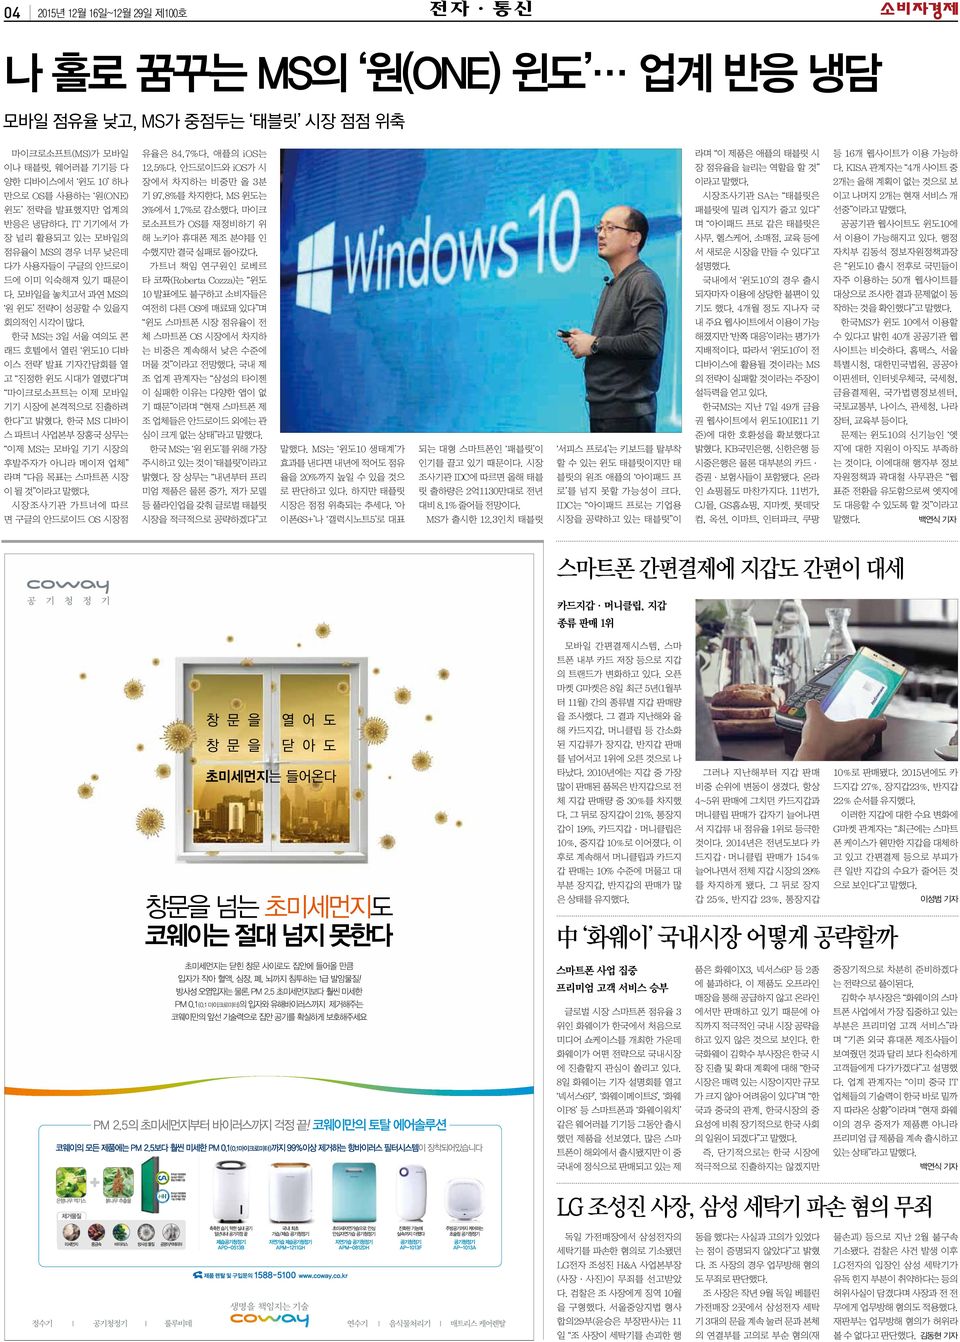 한국 MS는 3일 서울 여의도 콘 래드 호텔에서 열린 윈도10 디바 이스 전략 발표 기자간담회를 열 고 진정한 윈도 시대가 열렸다 며 마이크로소프트는 이제 모바일 기기 시장에 본격적으로 진출하려 한다 고 밝혔다.